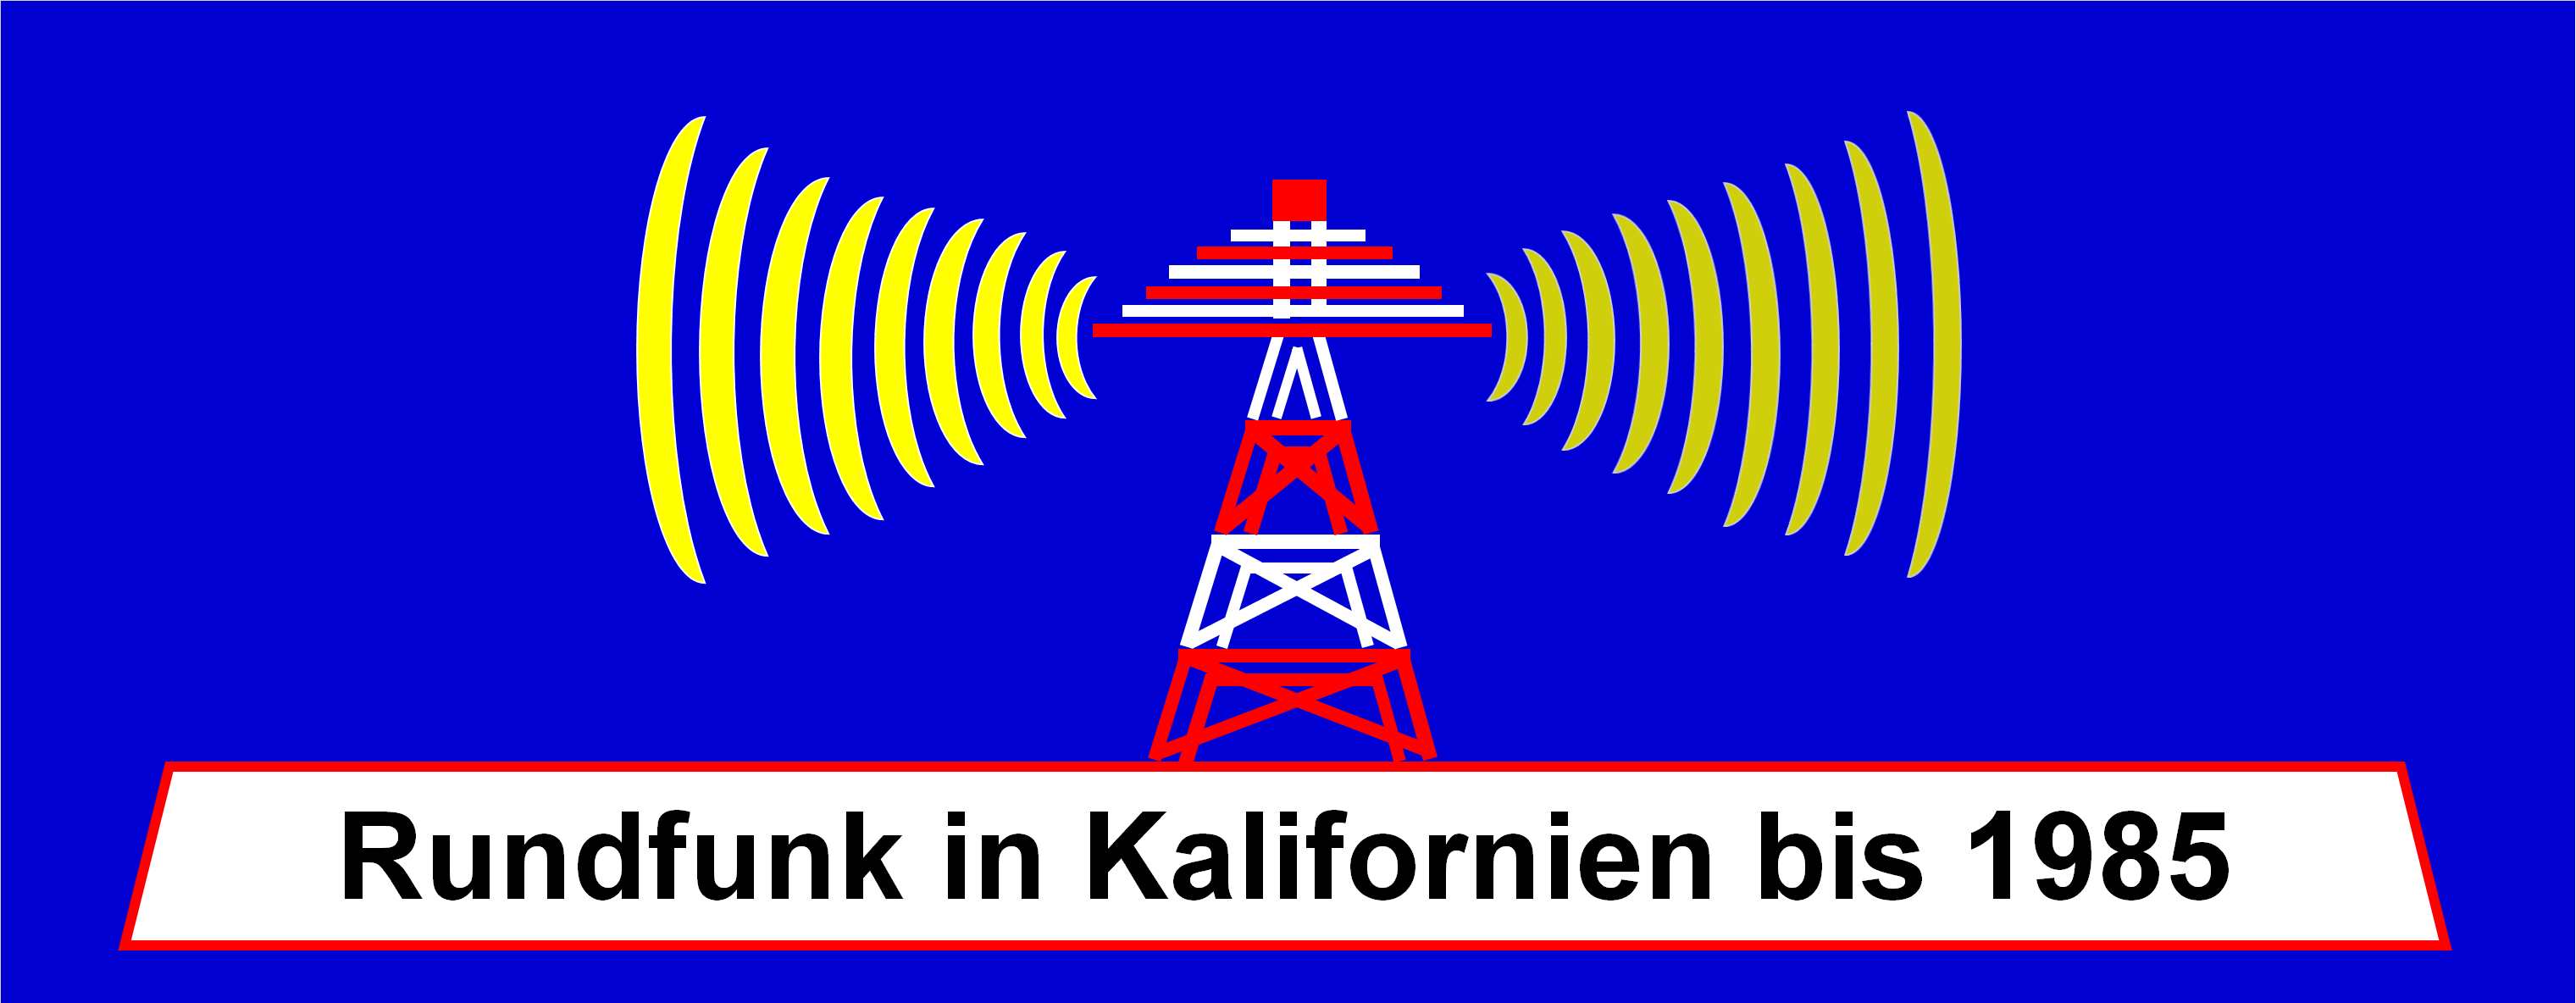 Rundfunk in Kalifornien bis 1985